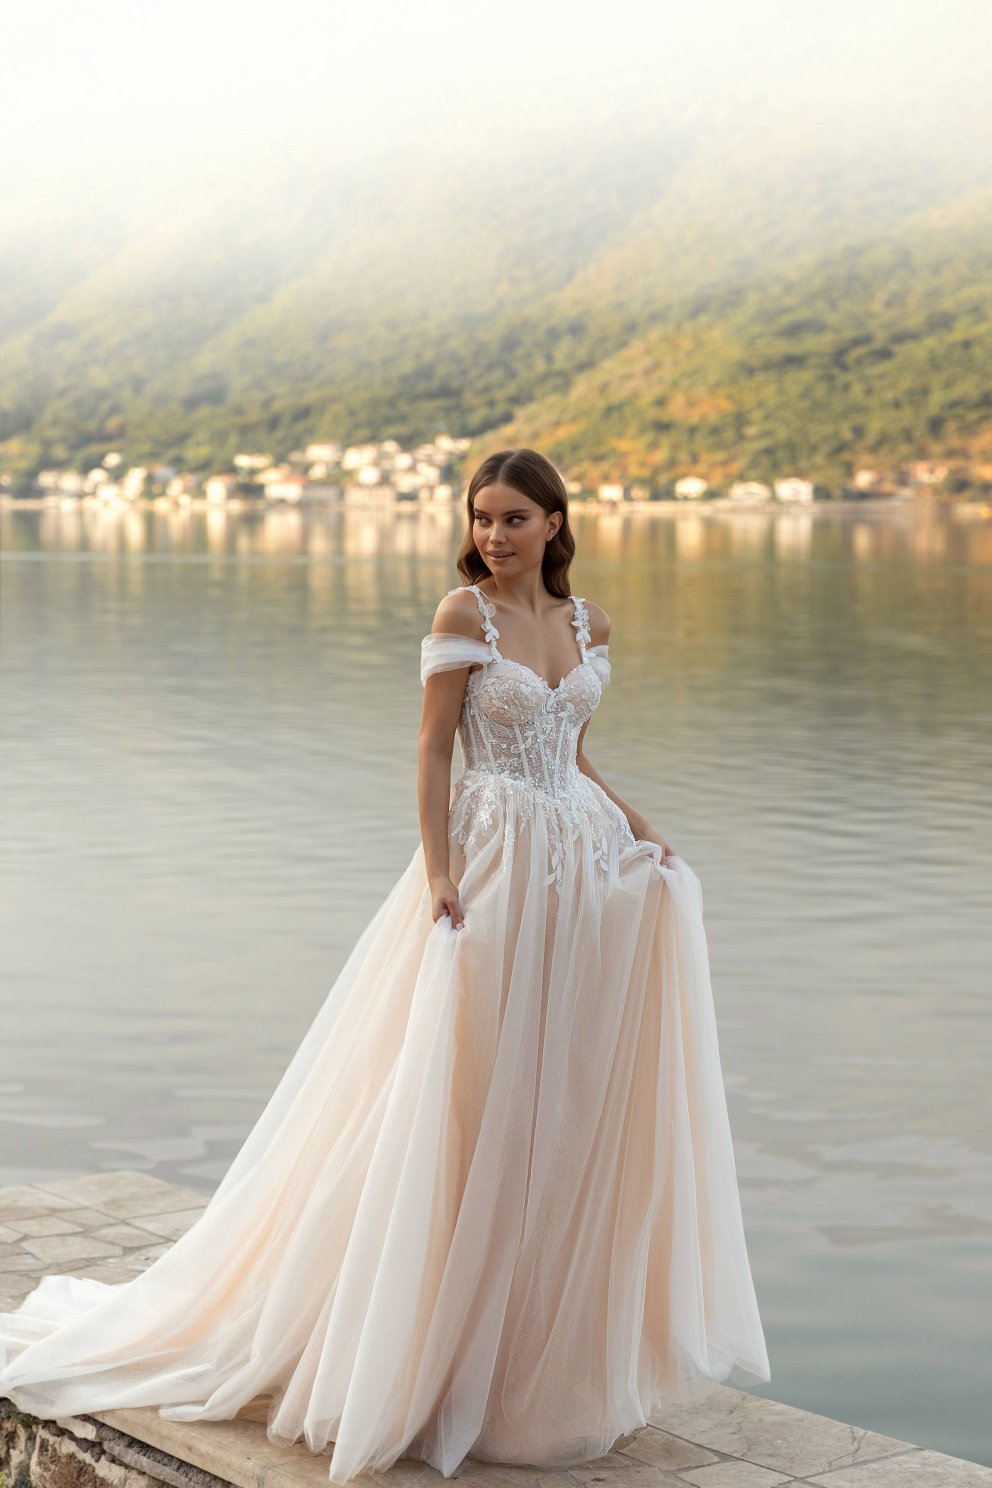 Romantické svatební šaty v broskvovém odstínu budou slušet zejména brunetkám.
